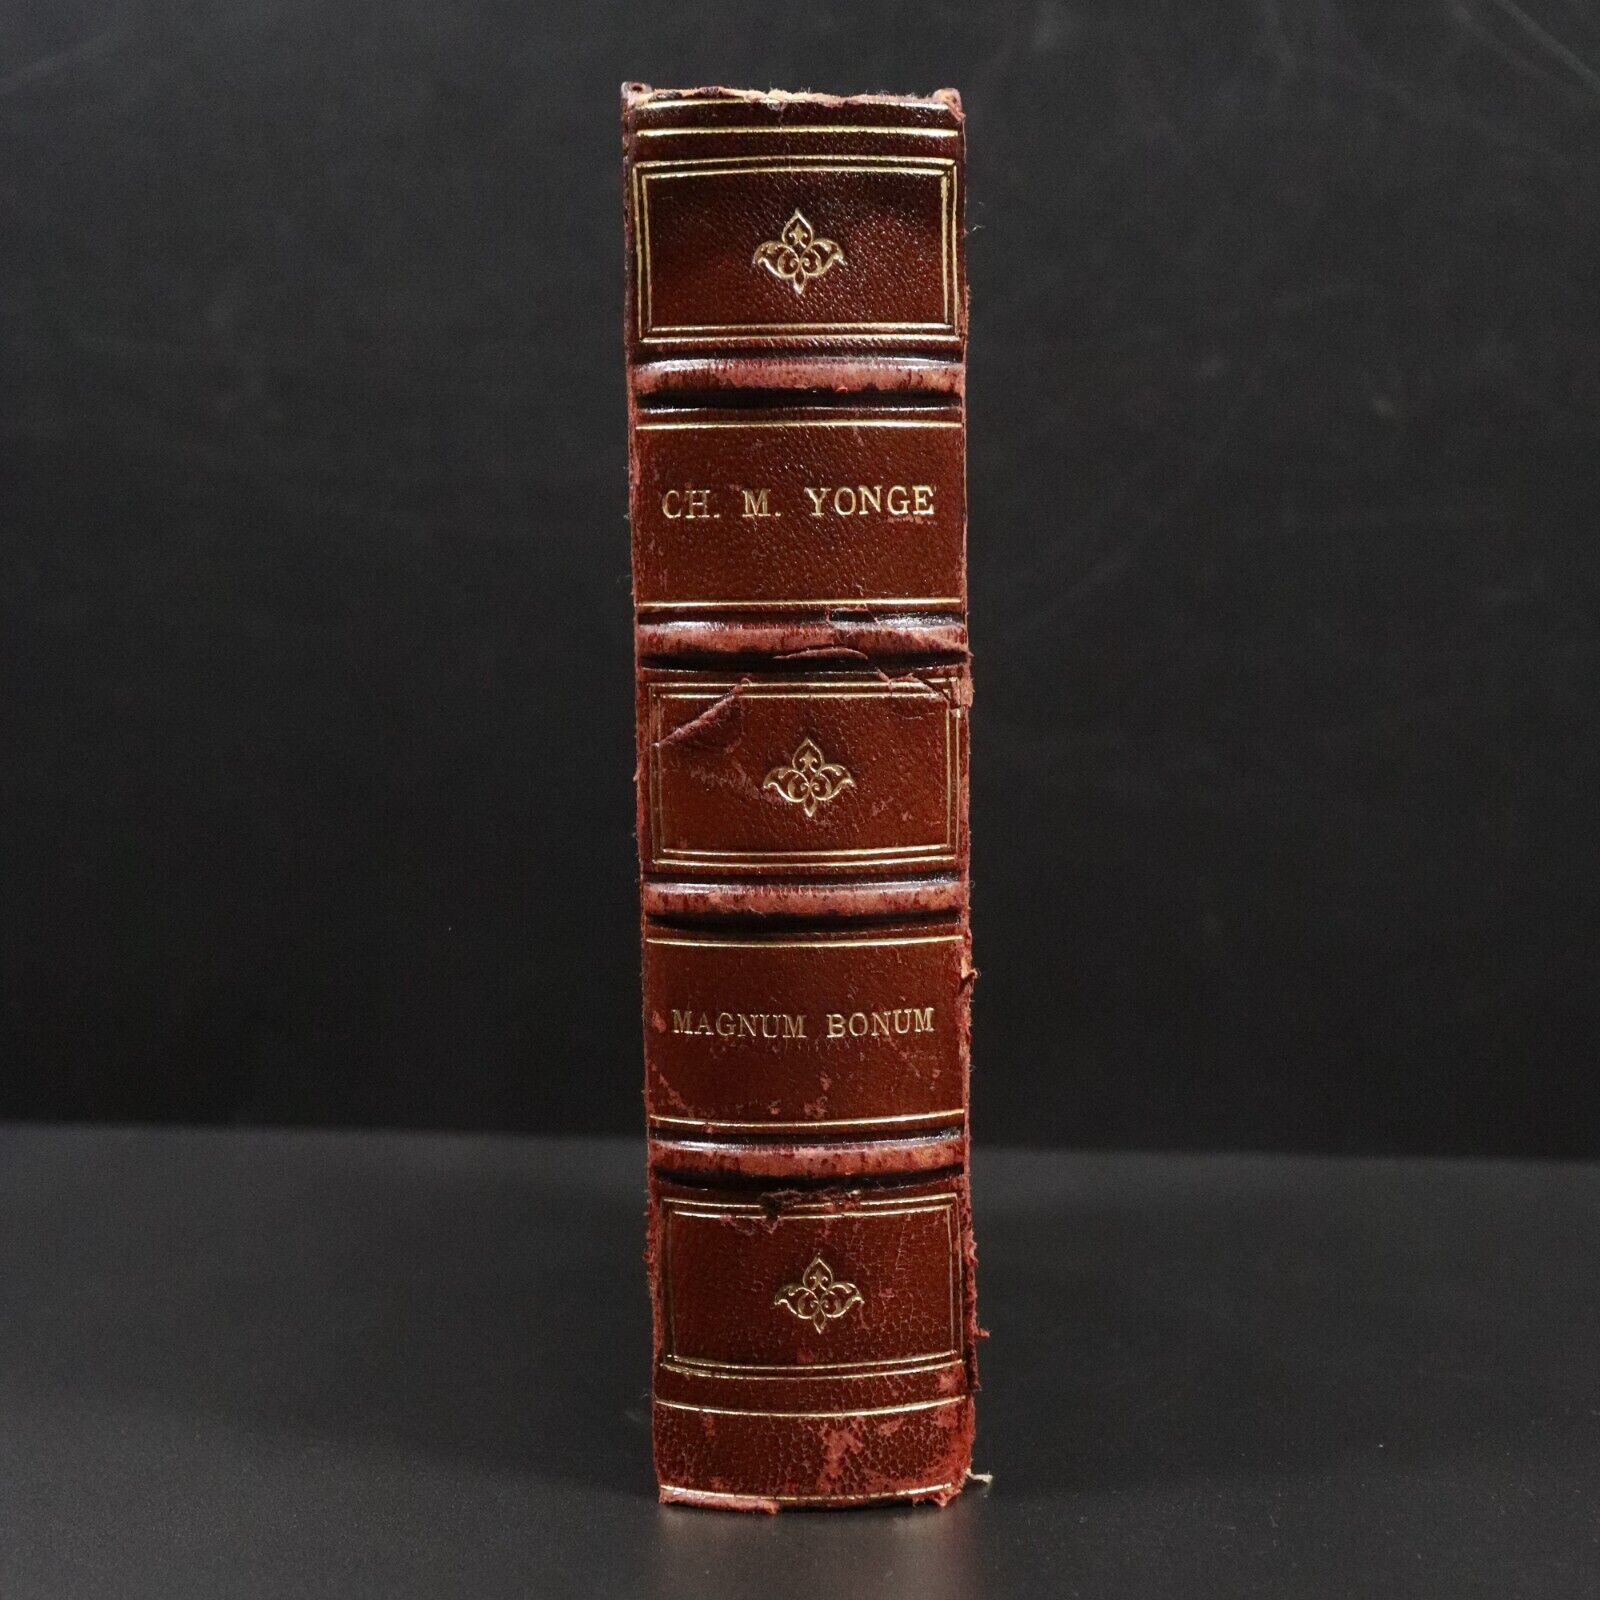 1880 Magnum Bonum by Charlotte M. Yonge Antique British Fiction Book